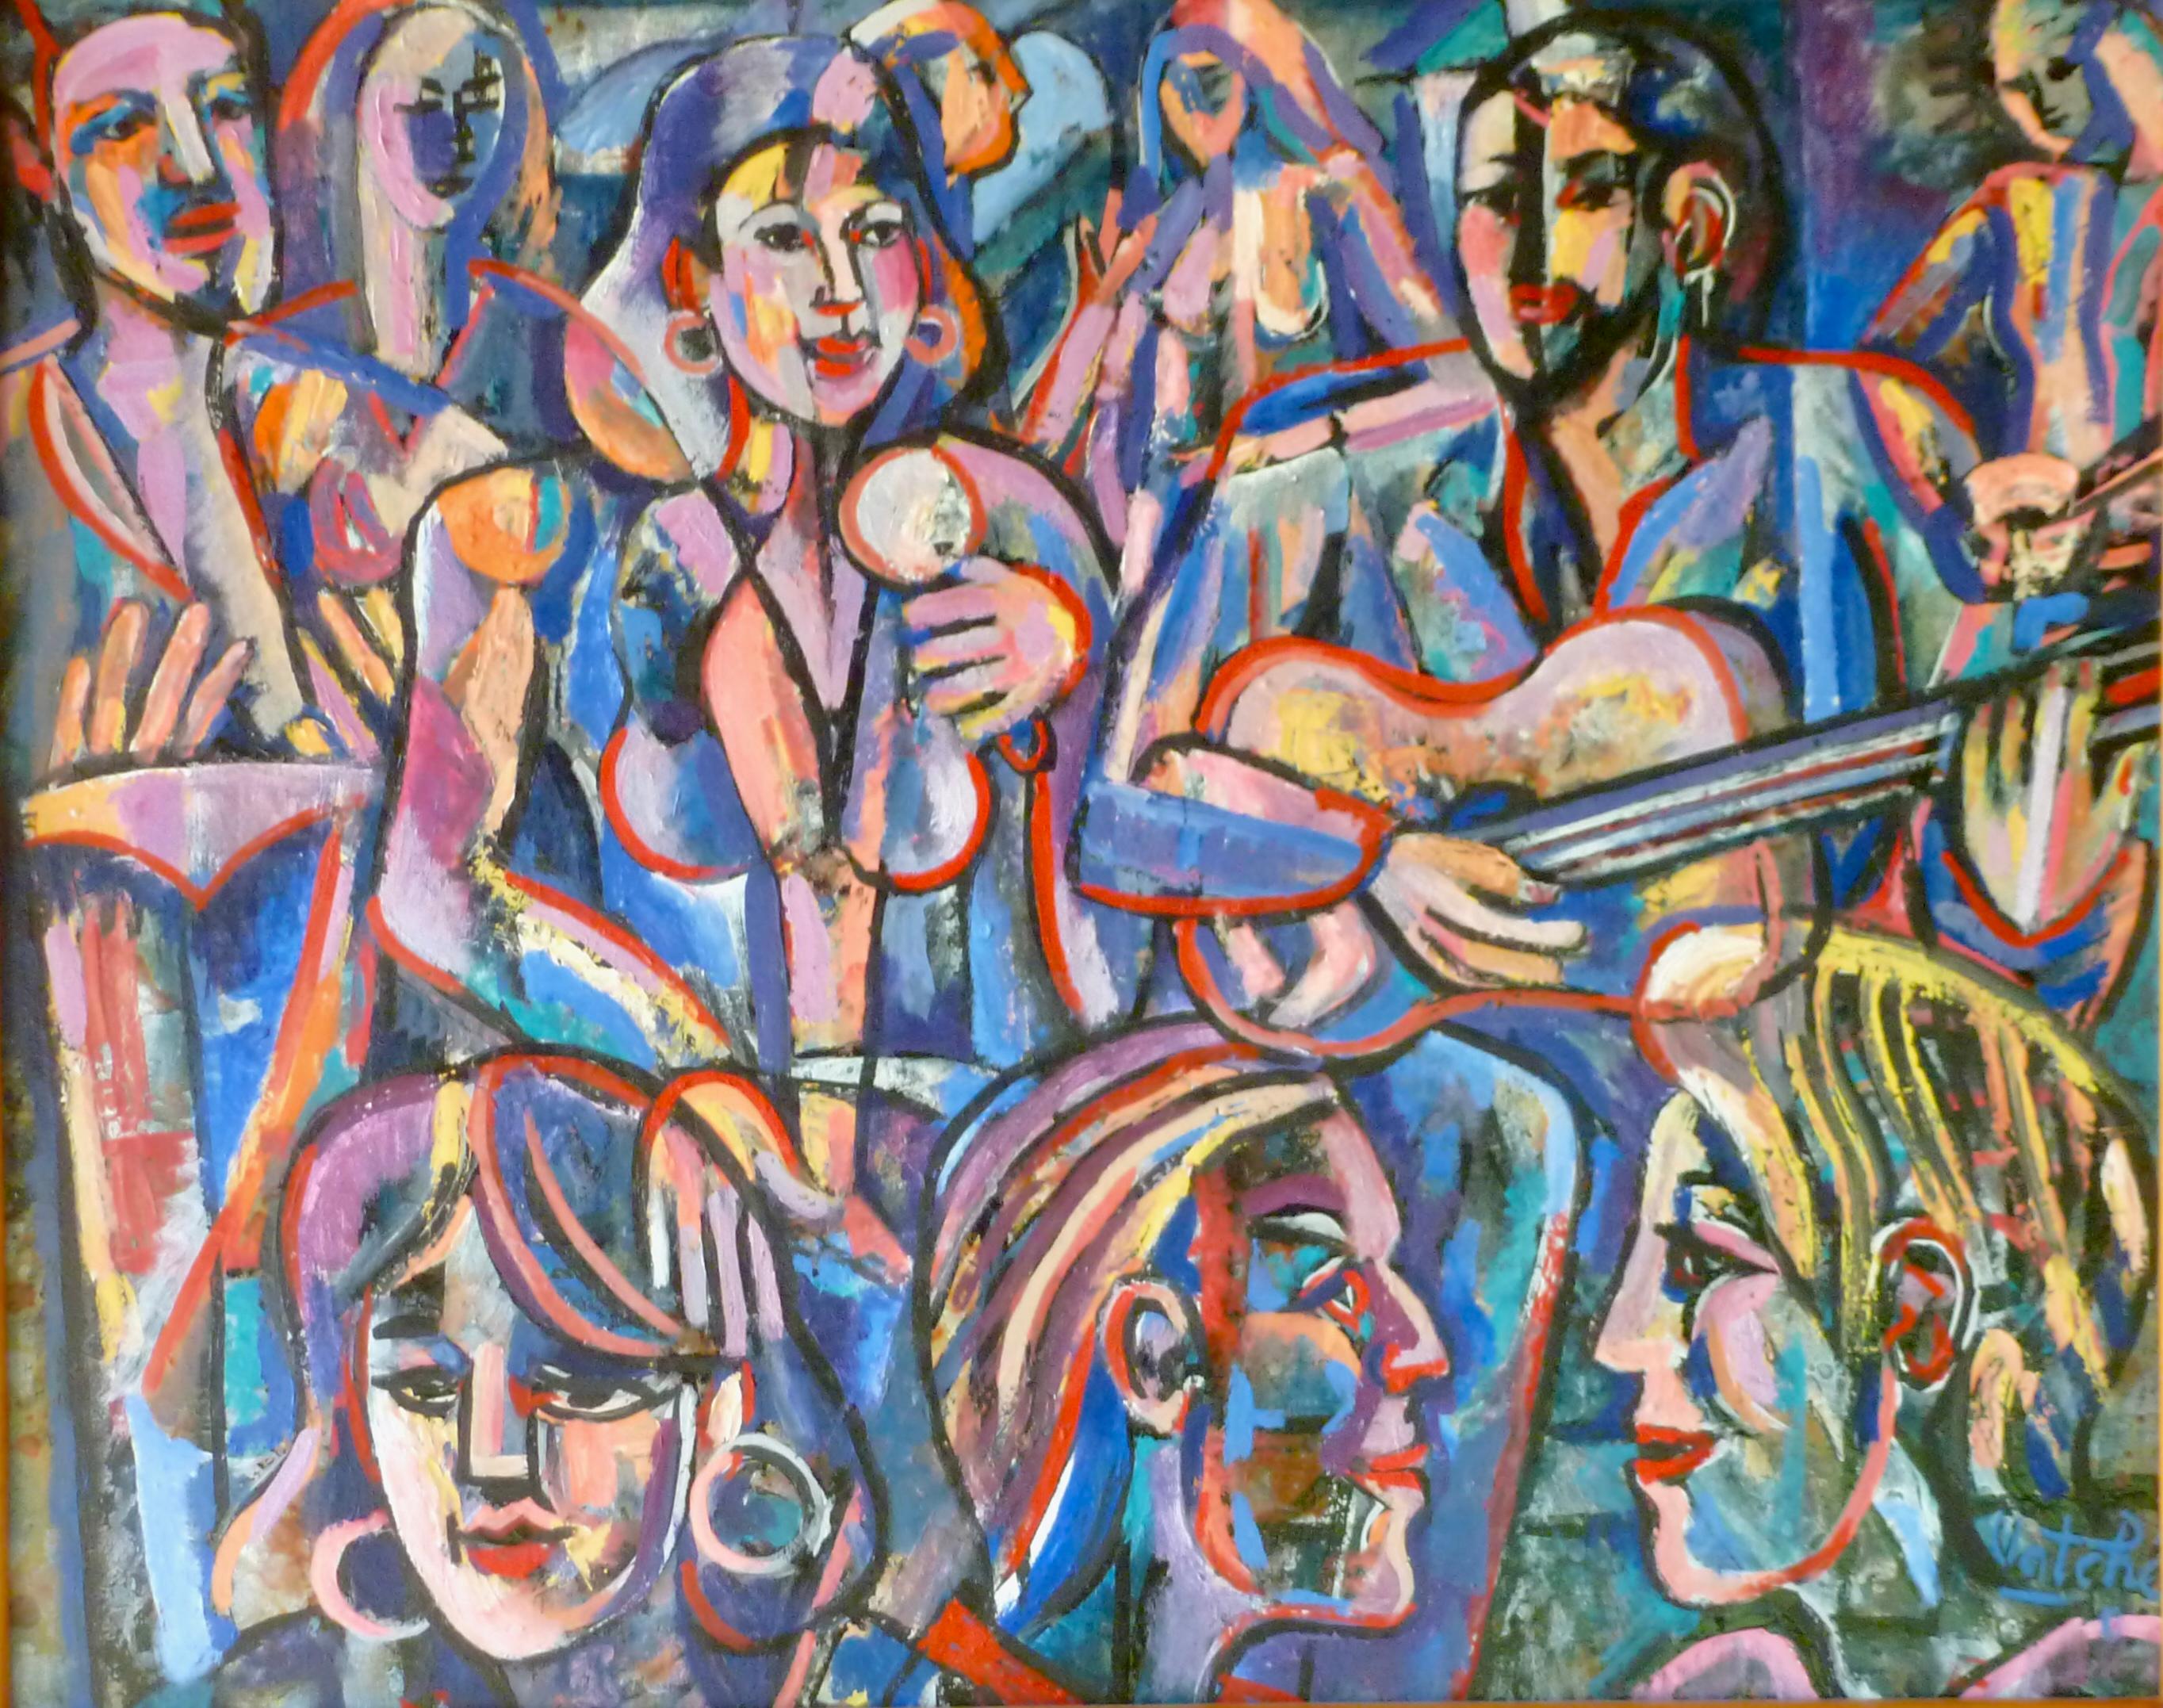 Vatche Geuvdjelian  Abstract Painting – Musiker bei einer Party 2022 farbenfrohe Öl/Leinwand abstrakte surreale armenische Künstlerin